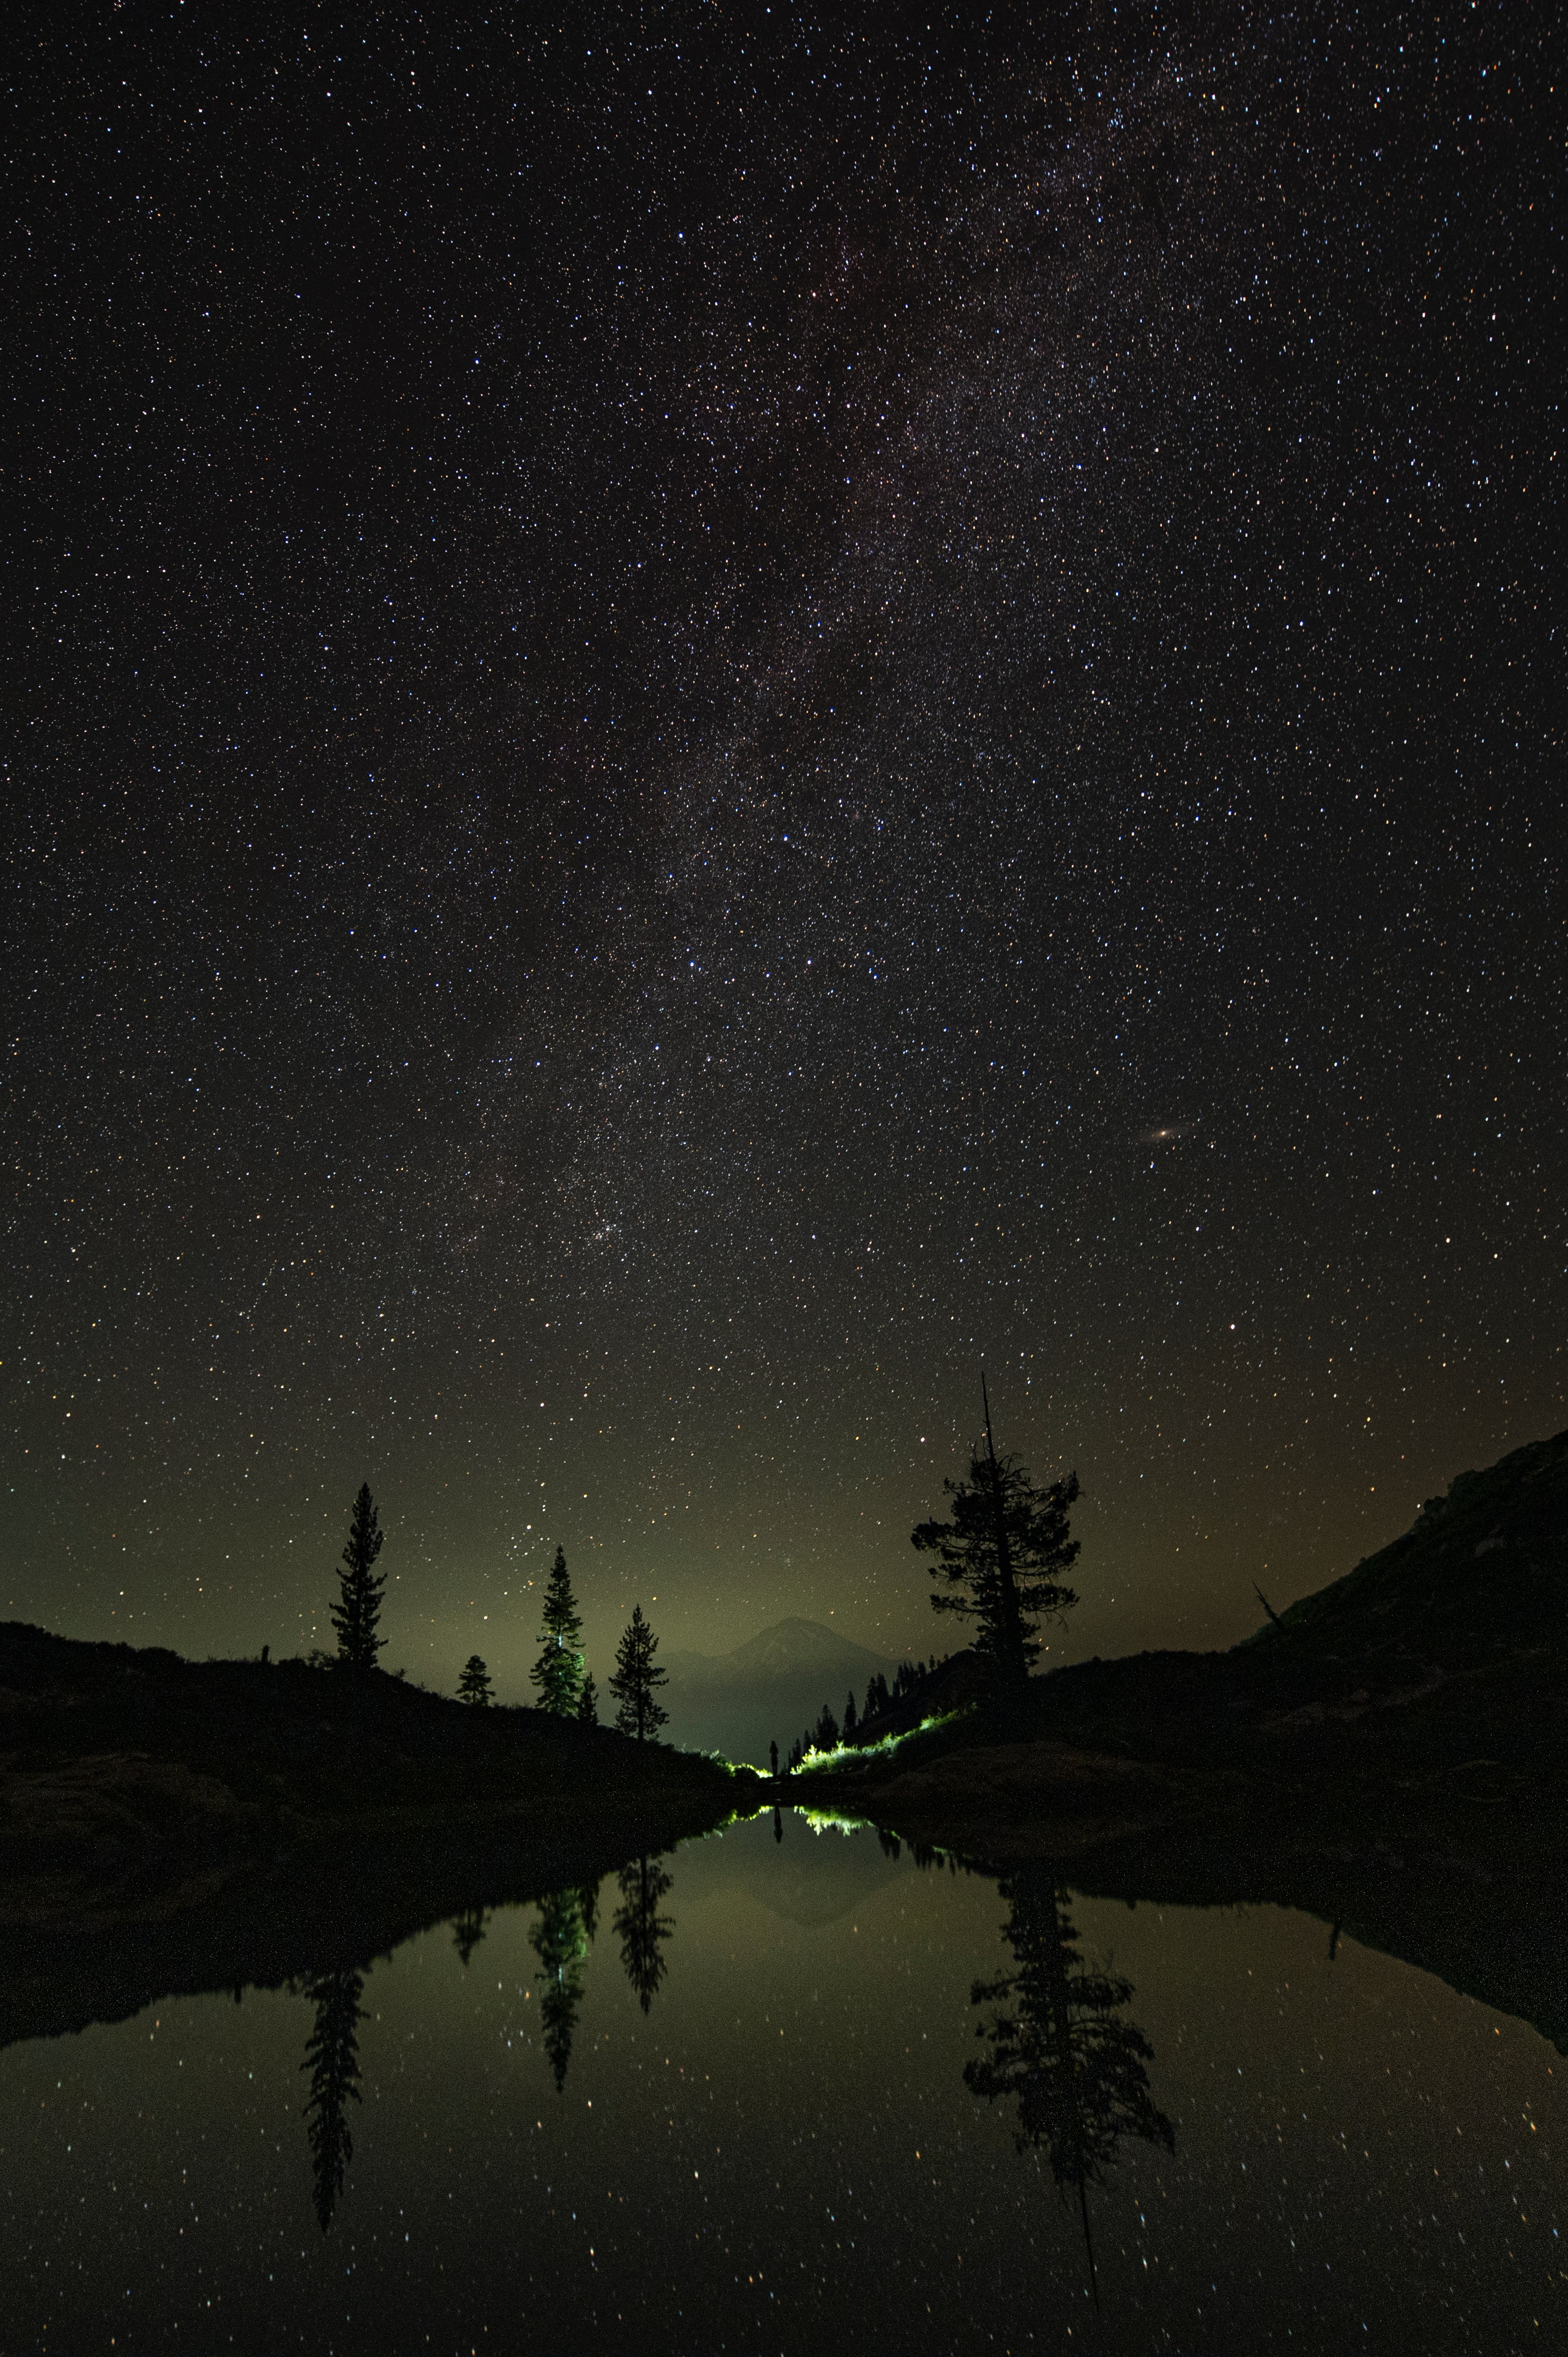 stars, trees, mountains, night, lake, dark, starry sky 1080p